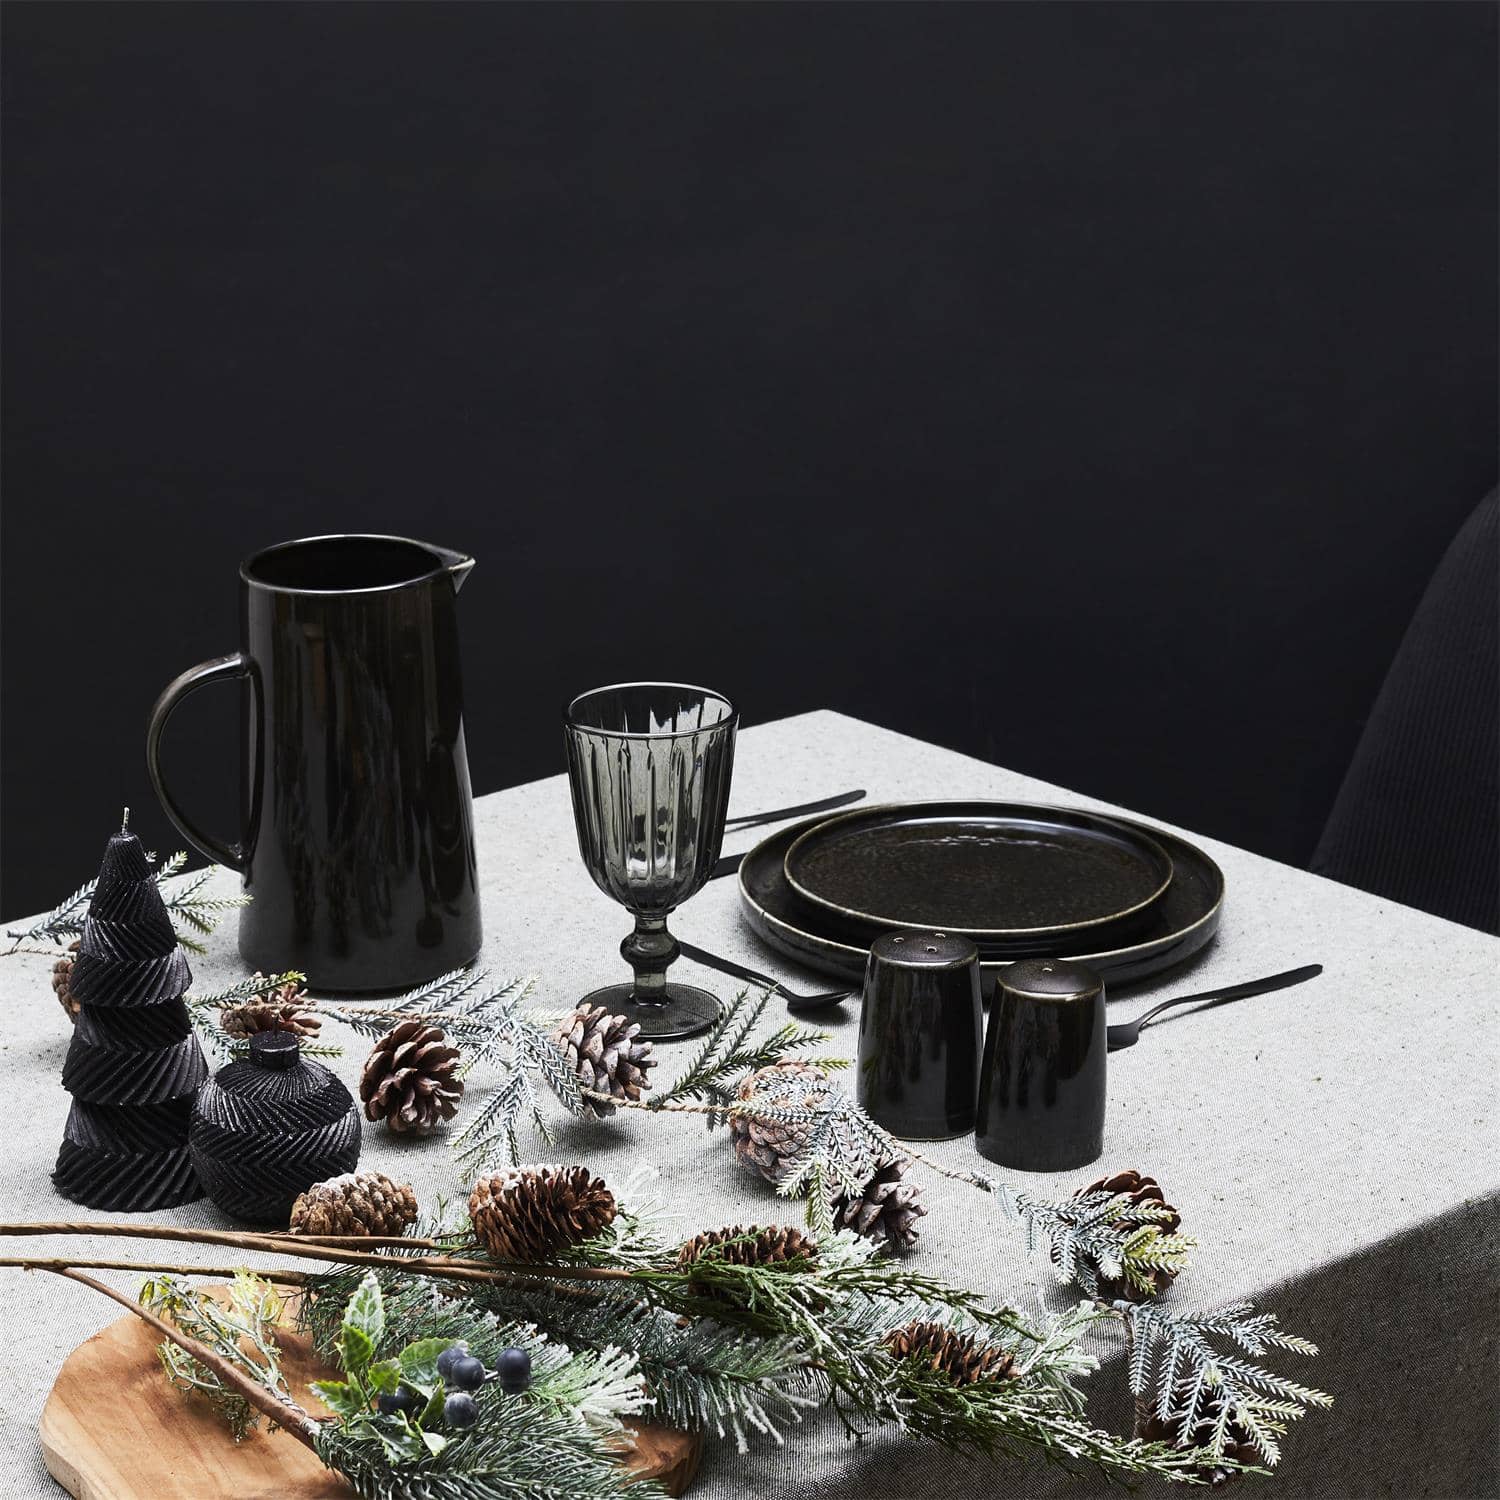 4goodz Galaa Dessertbord set van 6 stuks Keramiek 20 cm - Zwart